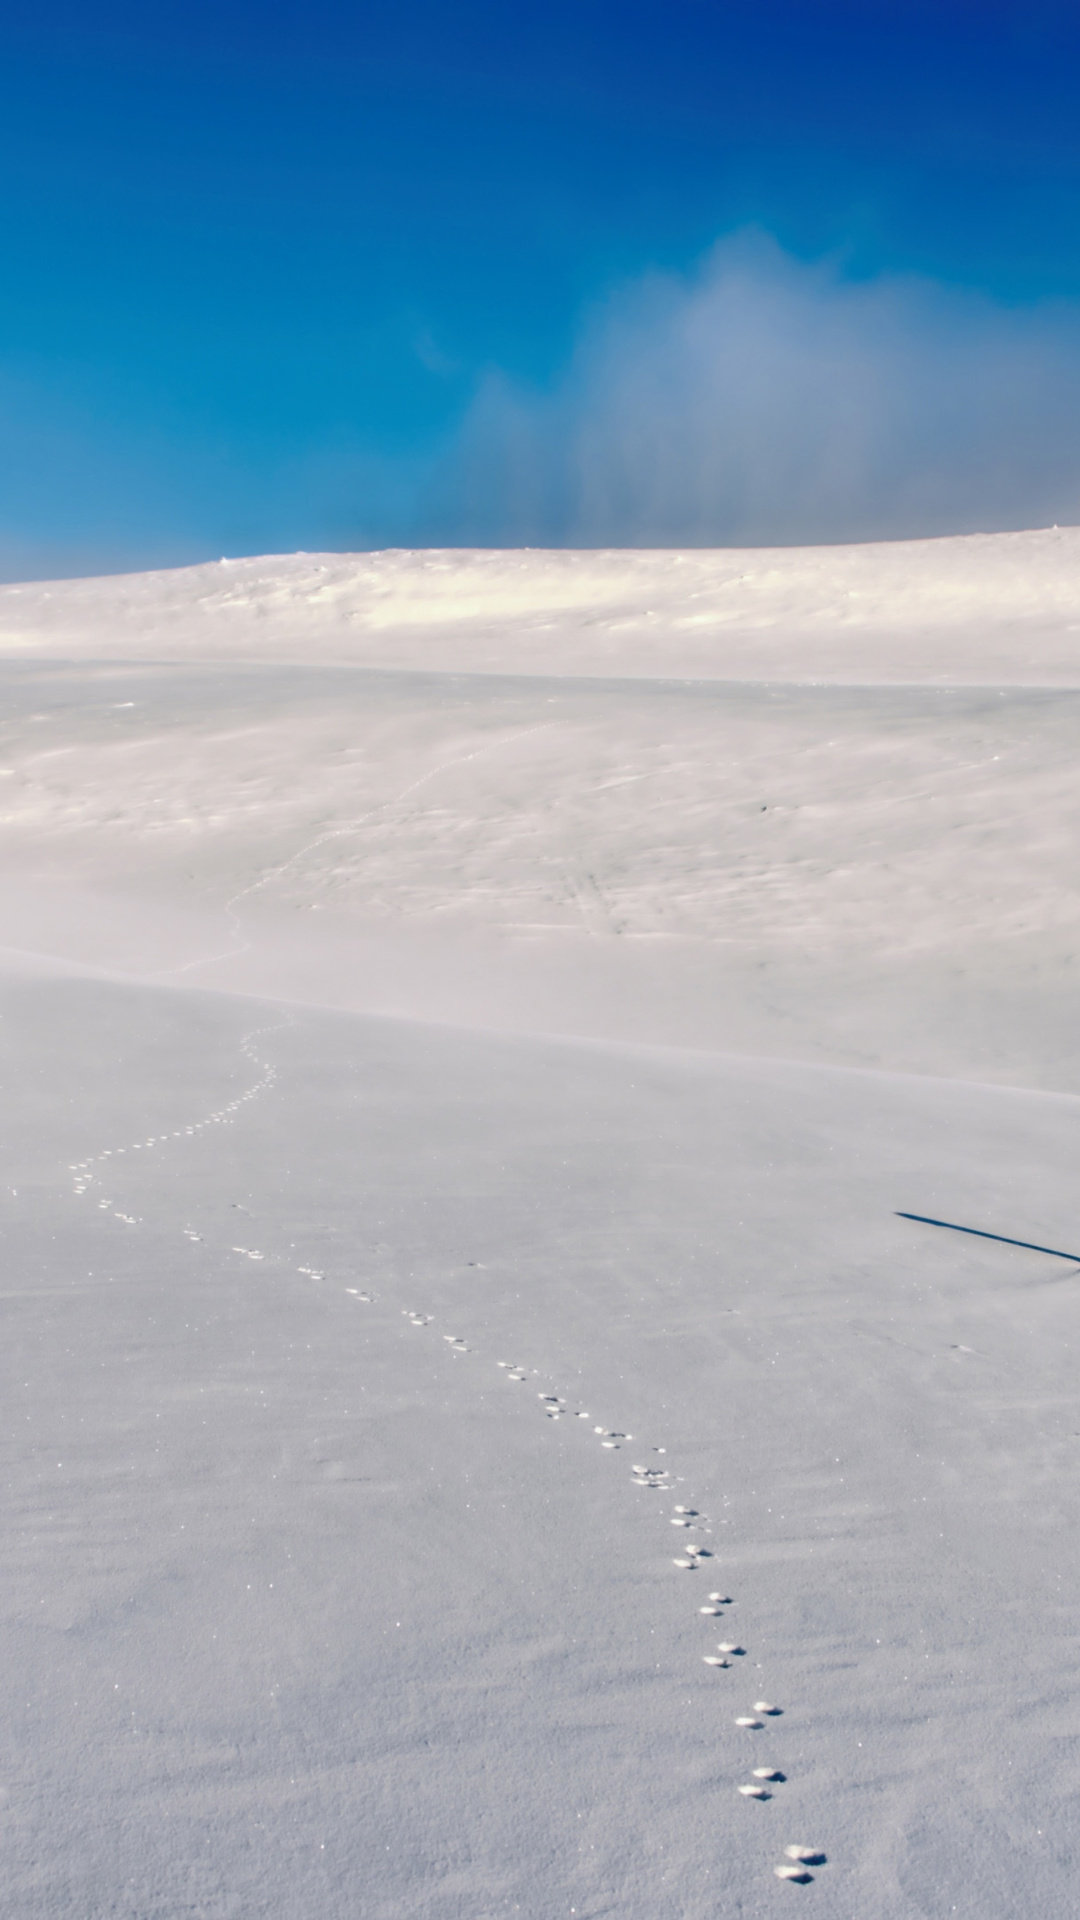 Sfondi Footprints on snow field 1080x1920